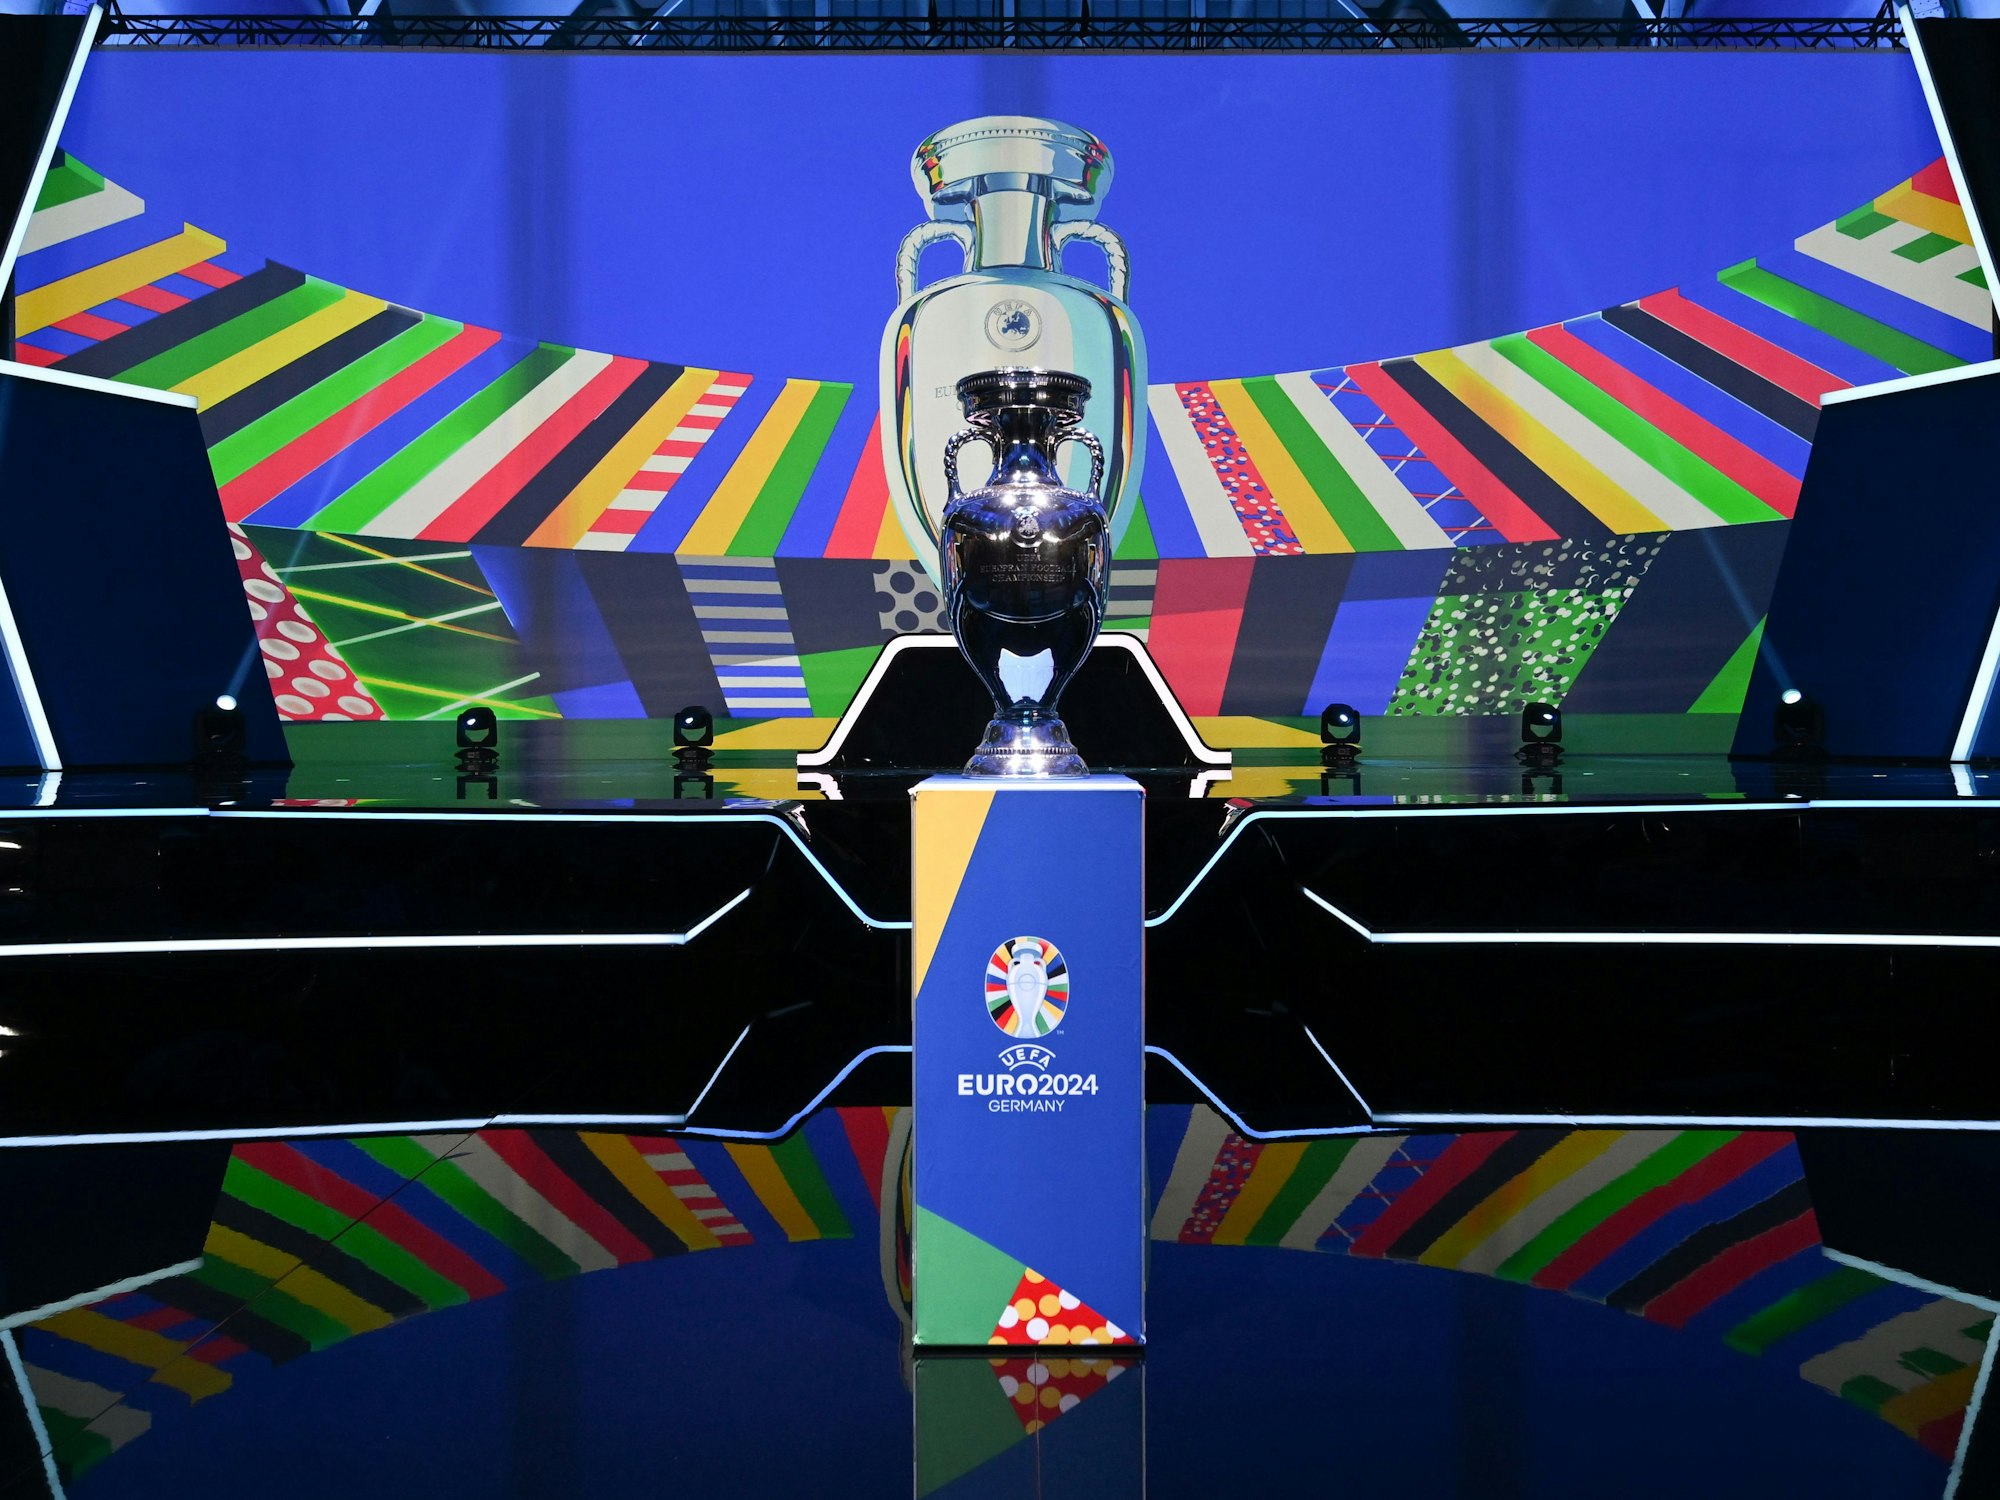 Der Europapokal wird in der Festhalle vor der Bühne präsentiert, auf der anschließend die Gruppen für die Qualifikationsphase ausgelost werden.